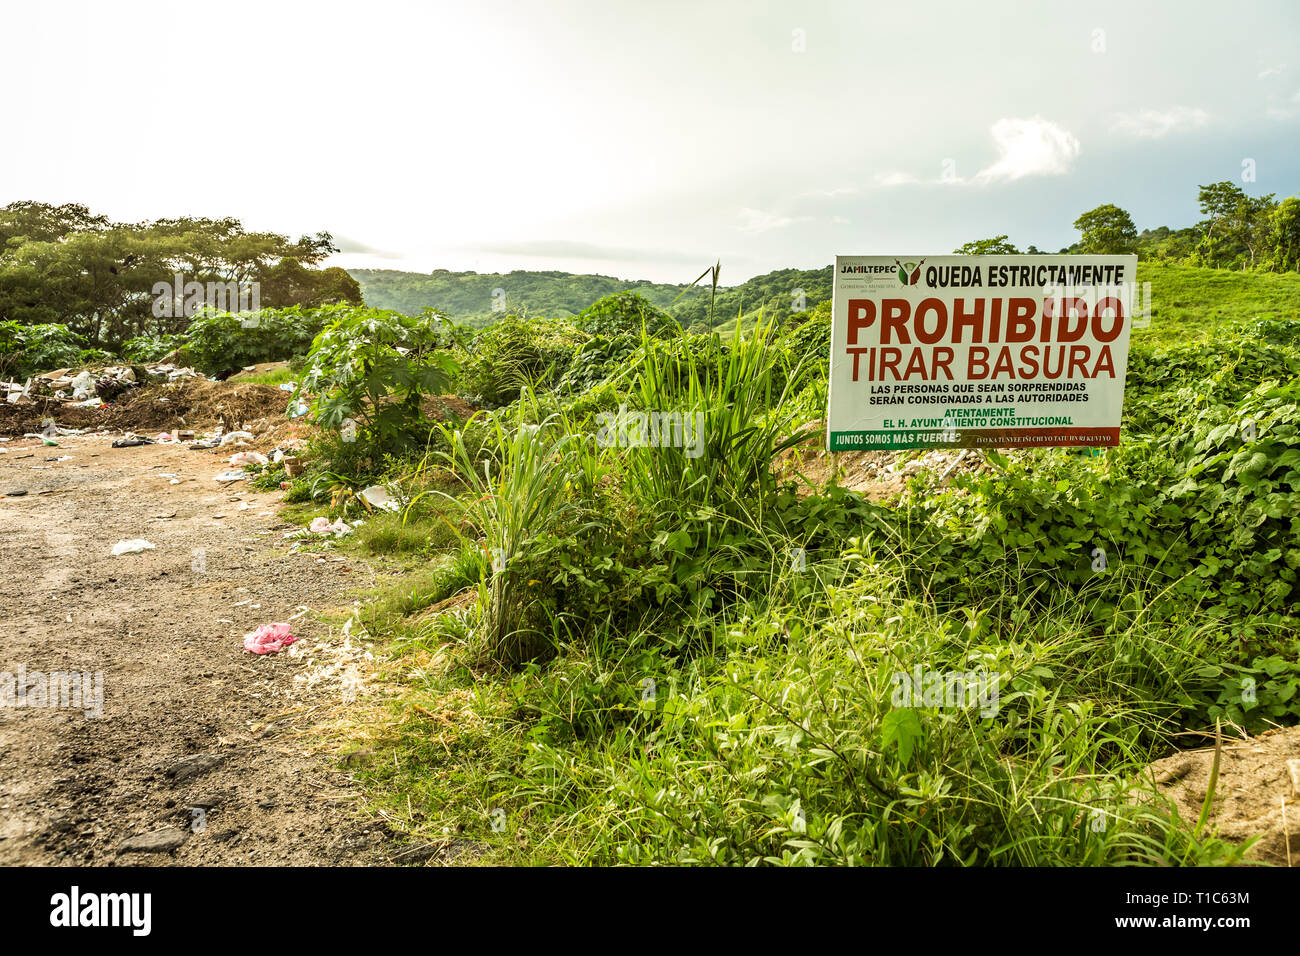 Kontrast von einem strassenrand Dumping Boden neben Regierung Schild mit der Aufschrift "Kein Dumping" Stockfoto